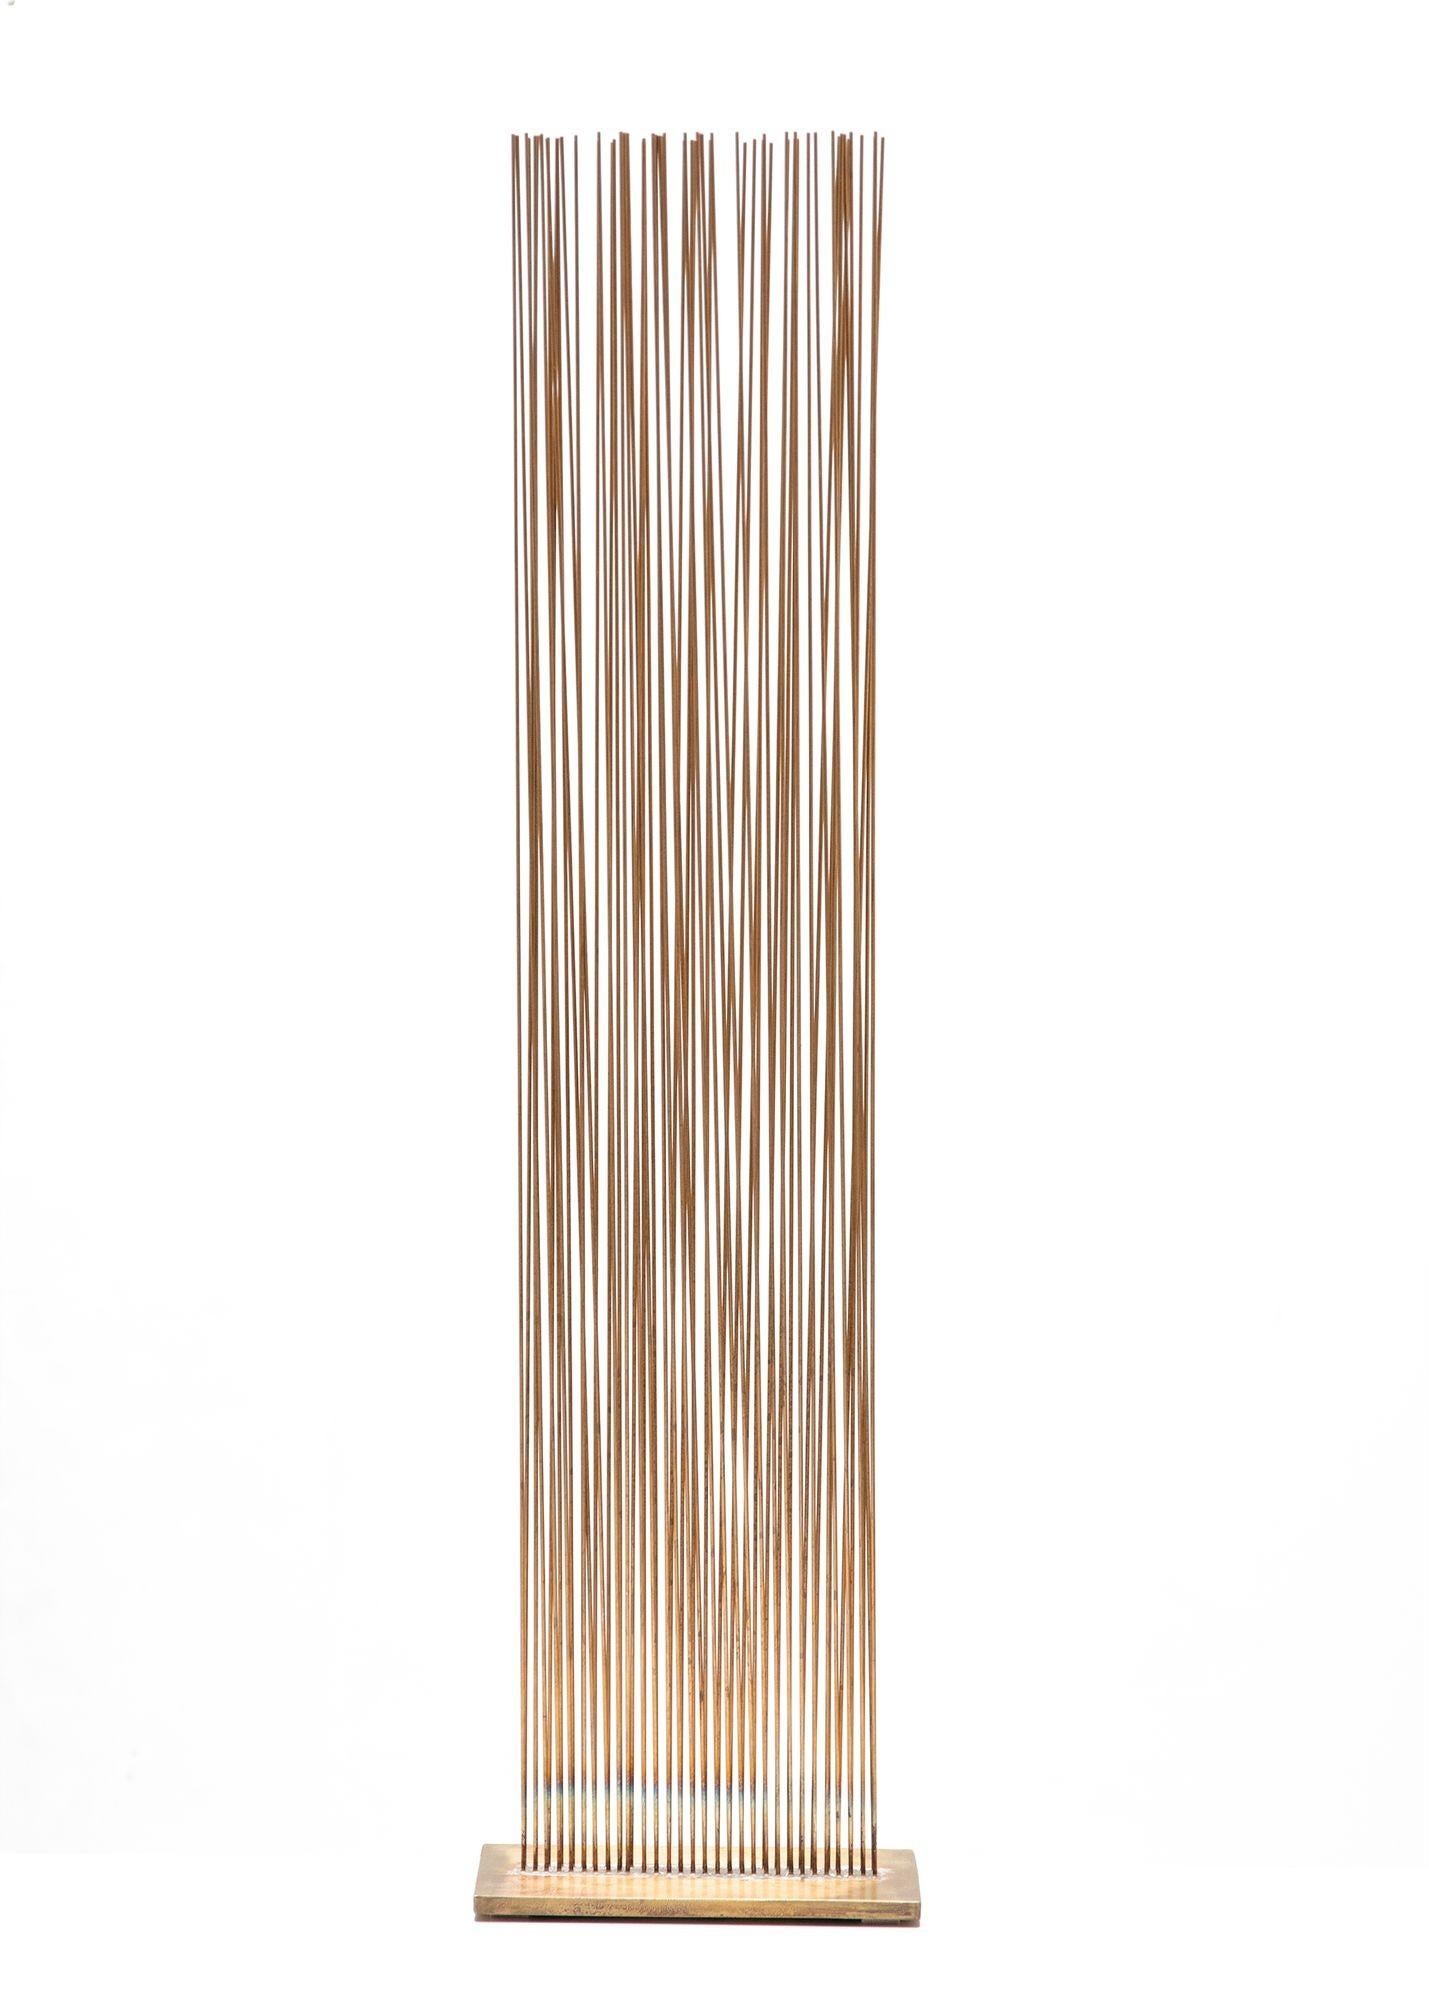 Val Bertoia Sonambient-Skulptur
3' hoch
Erzeugt einen schönen resonanten Ton, wenn die Stäbe geschoben werden
 
60 Stäbe aus Siliziumbronze mit Silber in V-förmigen Reihen auf einer Messingbasis befestigt
Gestempelt mit der Seriennummer